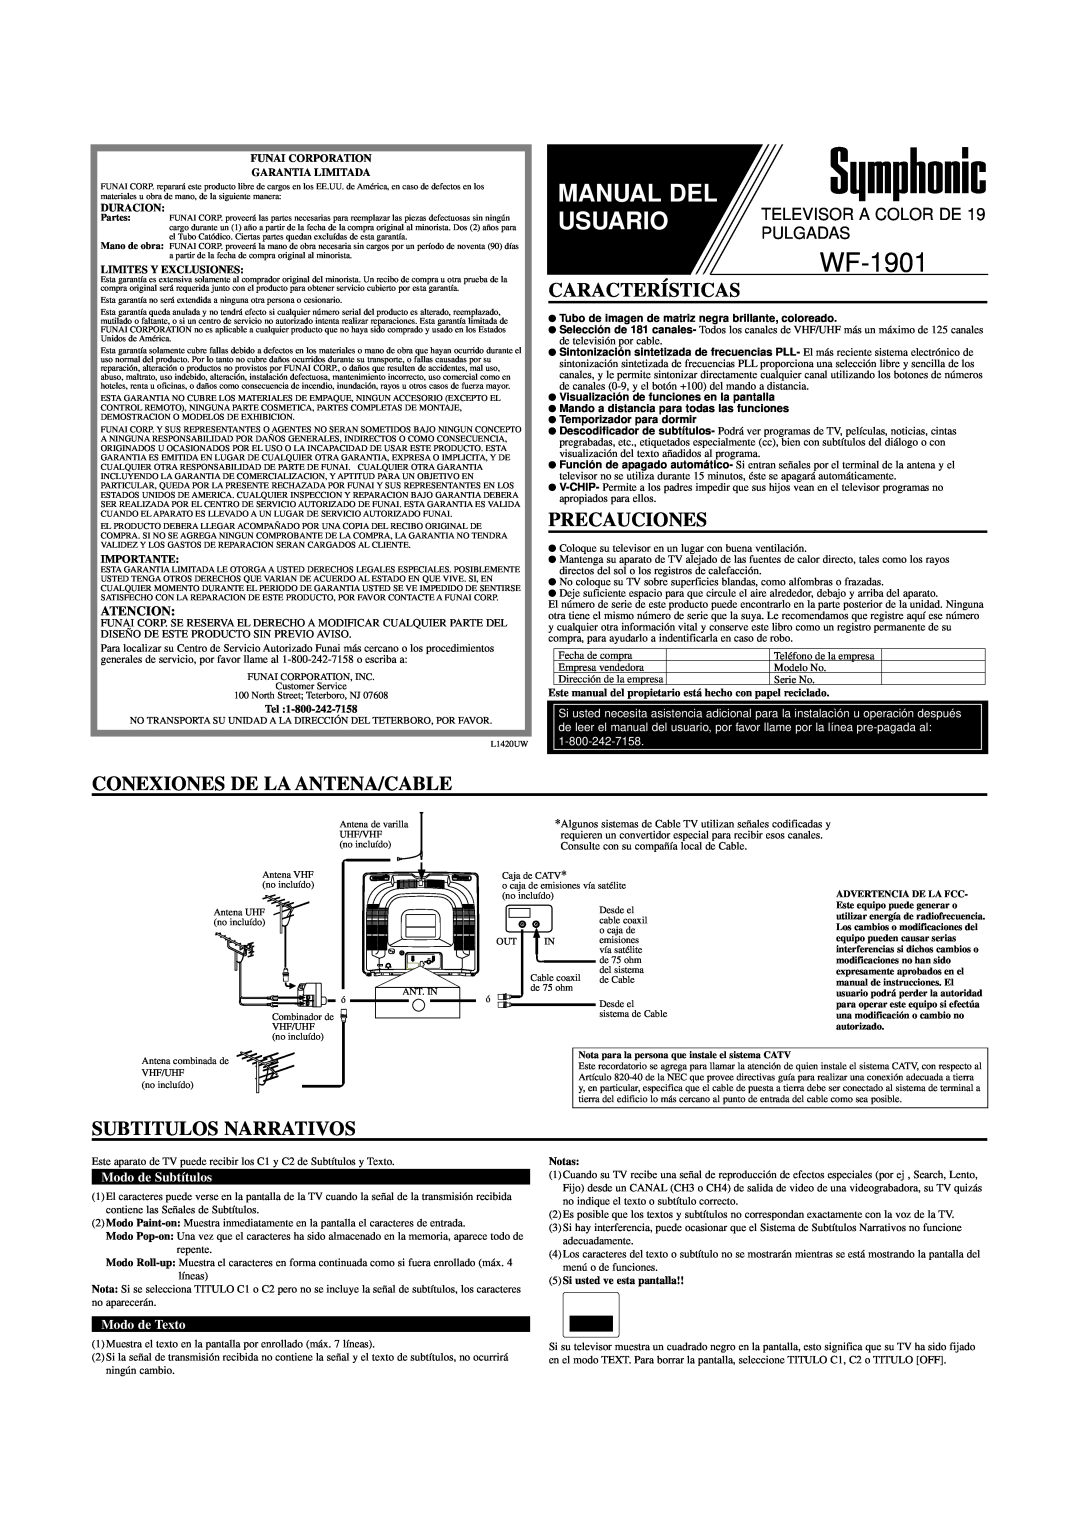 FUNAI WF-1901 Características, Precauciones, Conexiones De La Antena/Cable, Subtitulos Narrativos, Atencion, Modo de Texto 